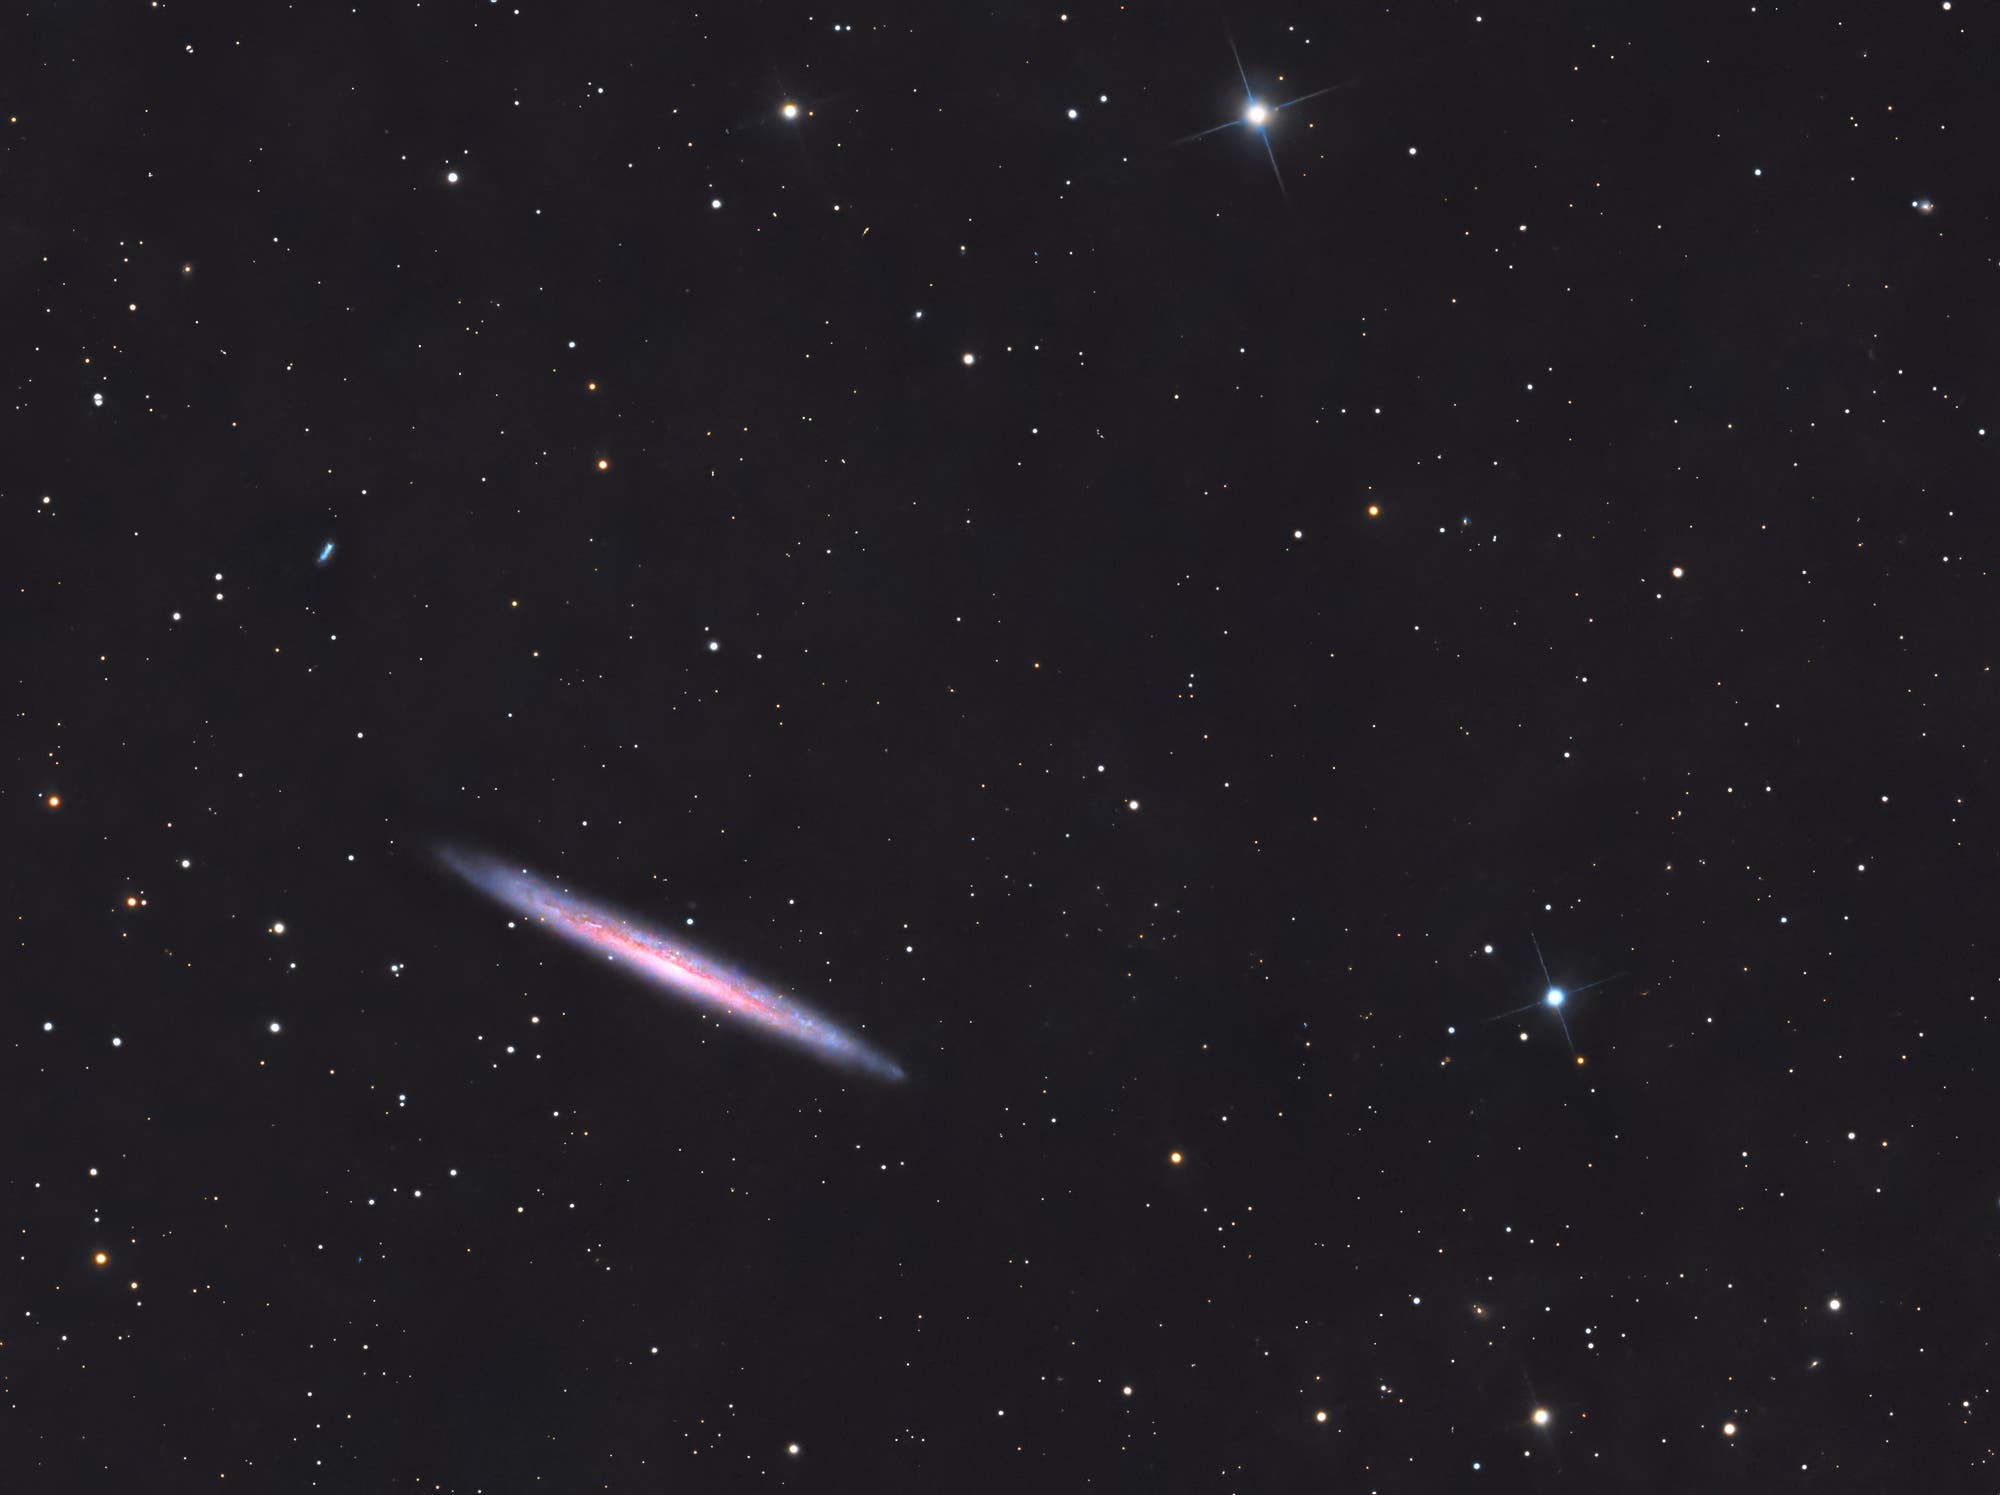  Knife-Edge-Galaxie (oder Splinter-Galaxie) – NGC 5907